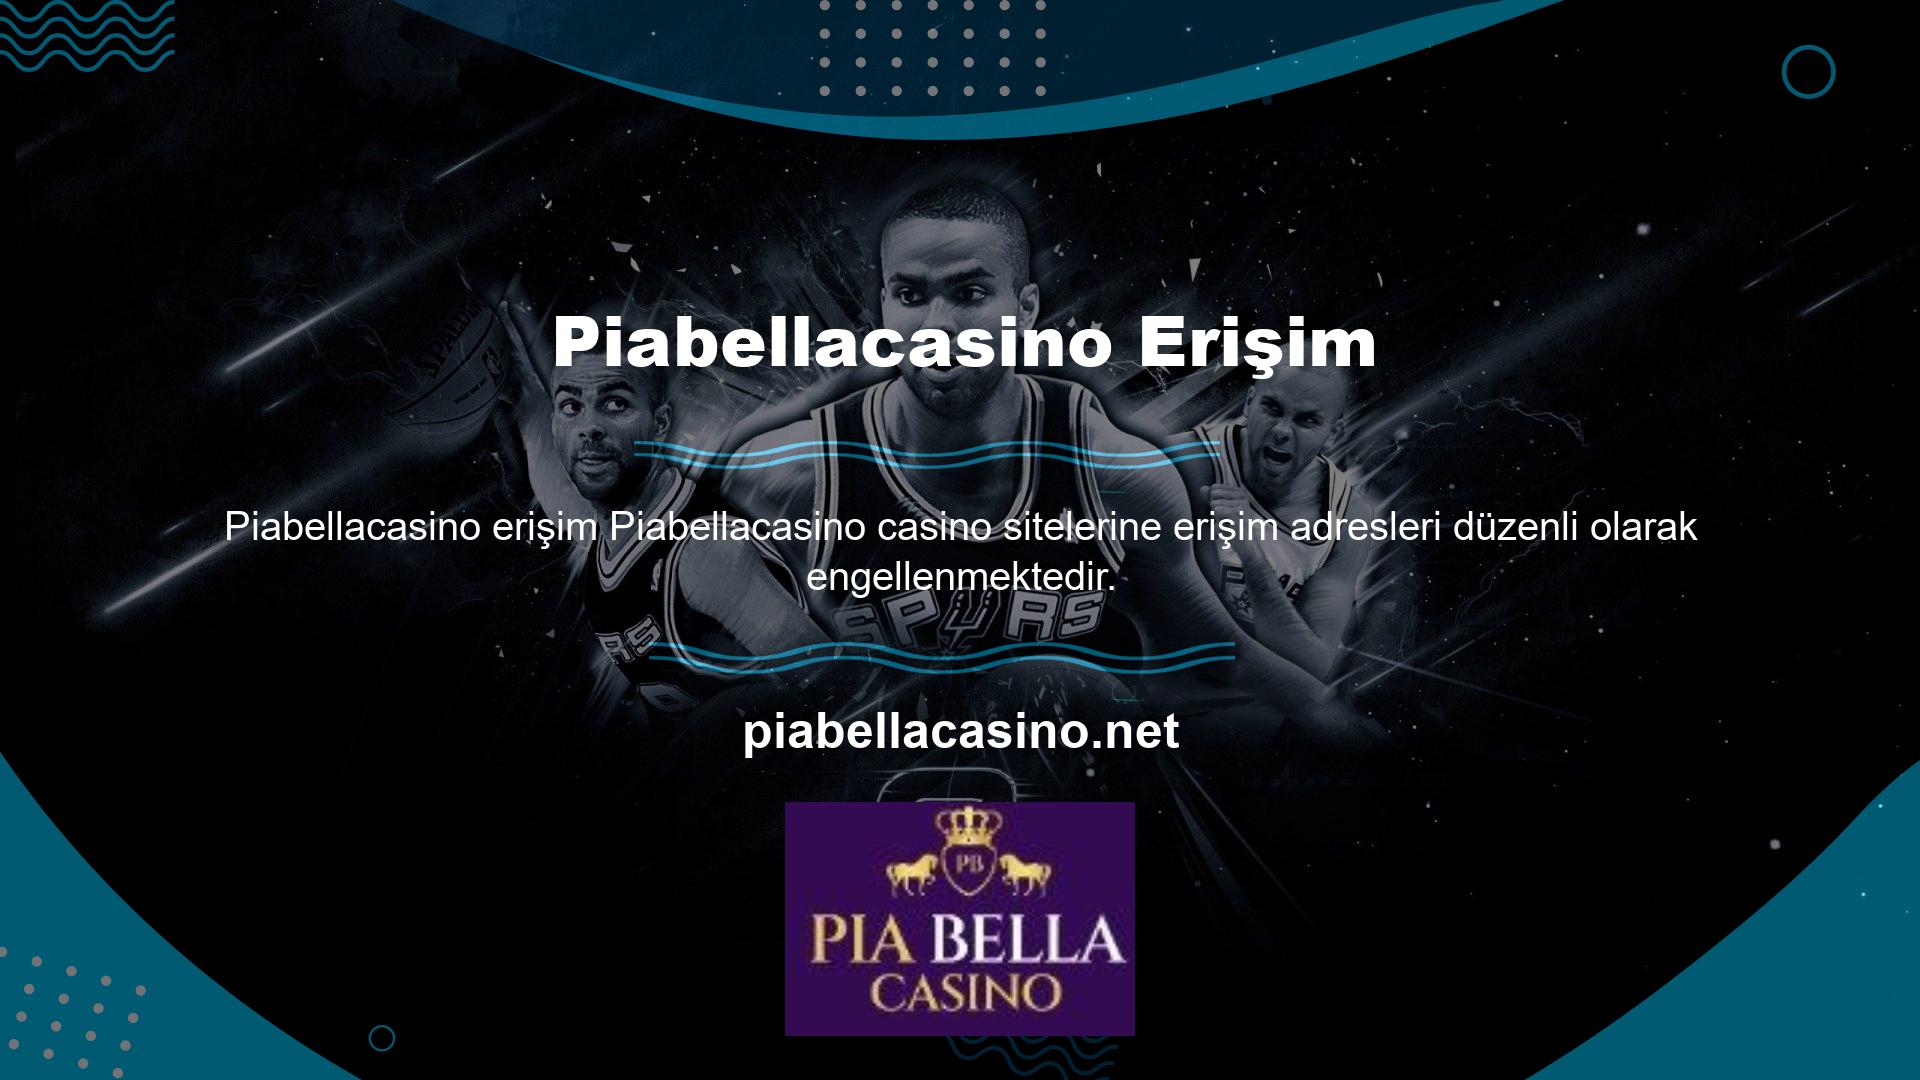 Piabellacasino, her hafta Türkiye'deki tüm yasa dışı casino sitelerinin yasallaştırılmasının yarattığı giriş engelleriyle boğuşuyor